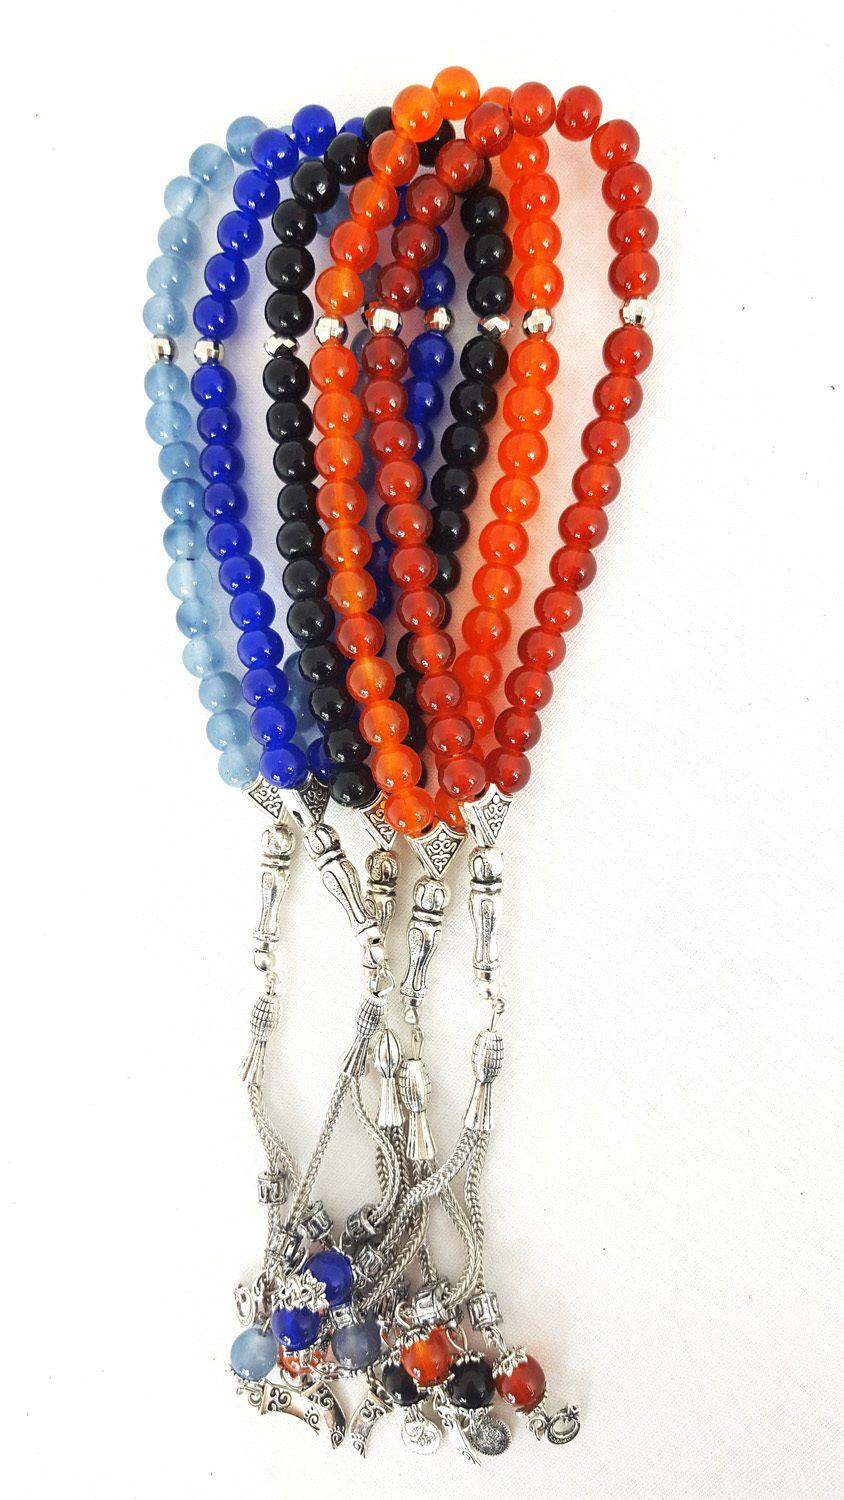 ✪ Prayer Beads 8mm Muslim Prayer Beads Tasbeeh Prayer Beads Islam Counter  33 Beads 